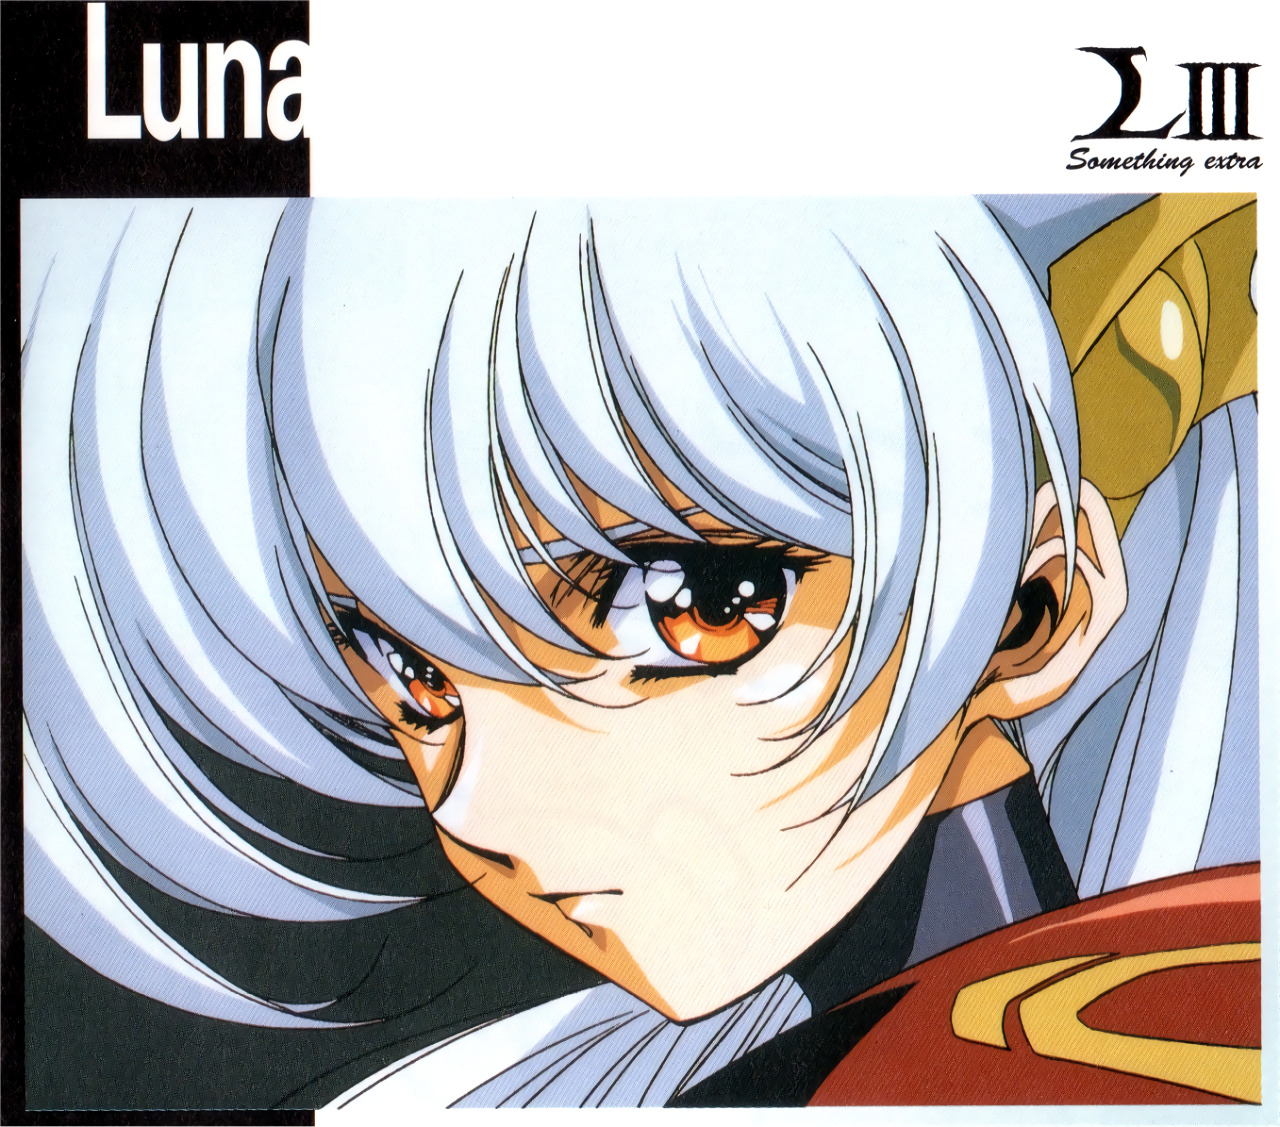 Luna langrisser MMOs and